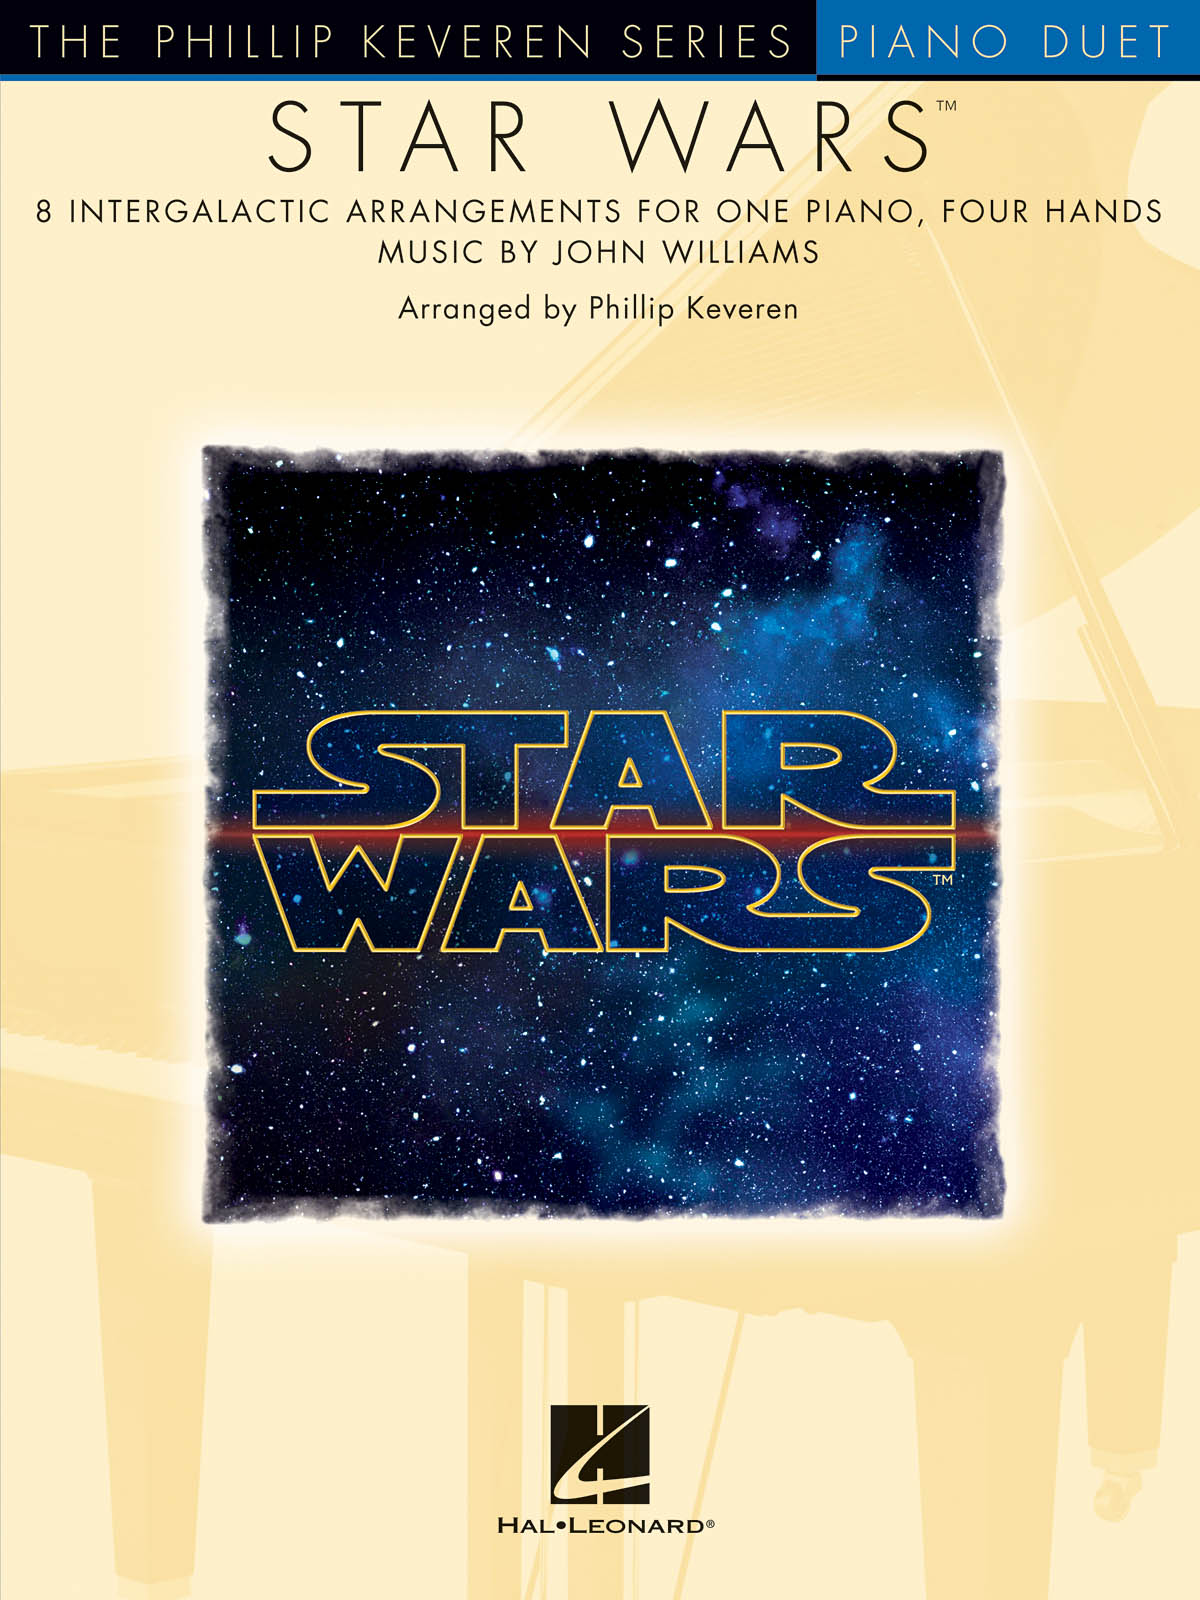 Star Wars (Piano Duet) - The Phillip Keveren Series - 8 Intergalactic Arrangements for one piano, four hands - noty pro čtyřruční klavír